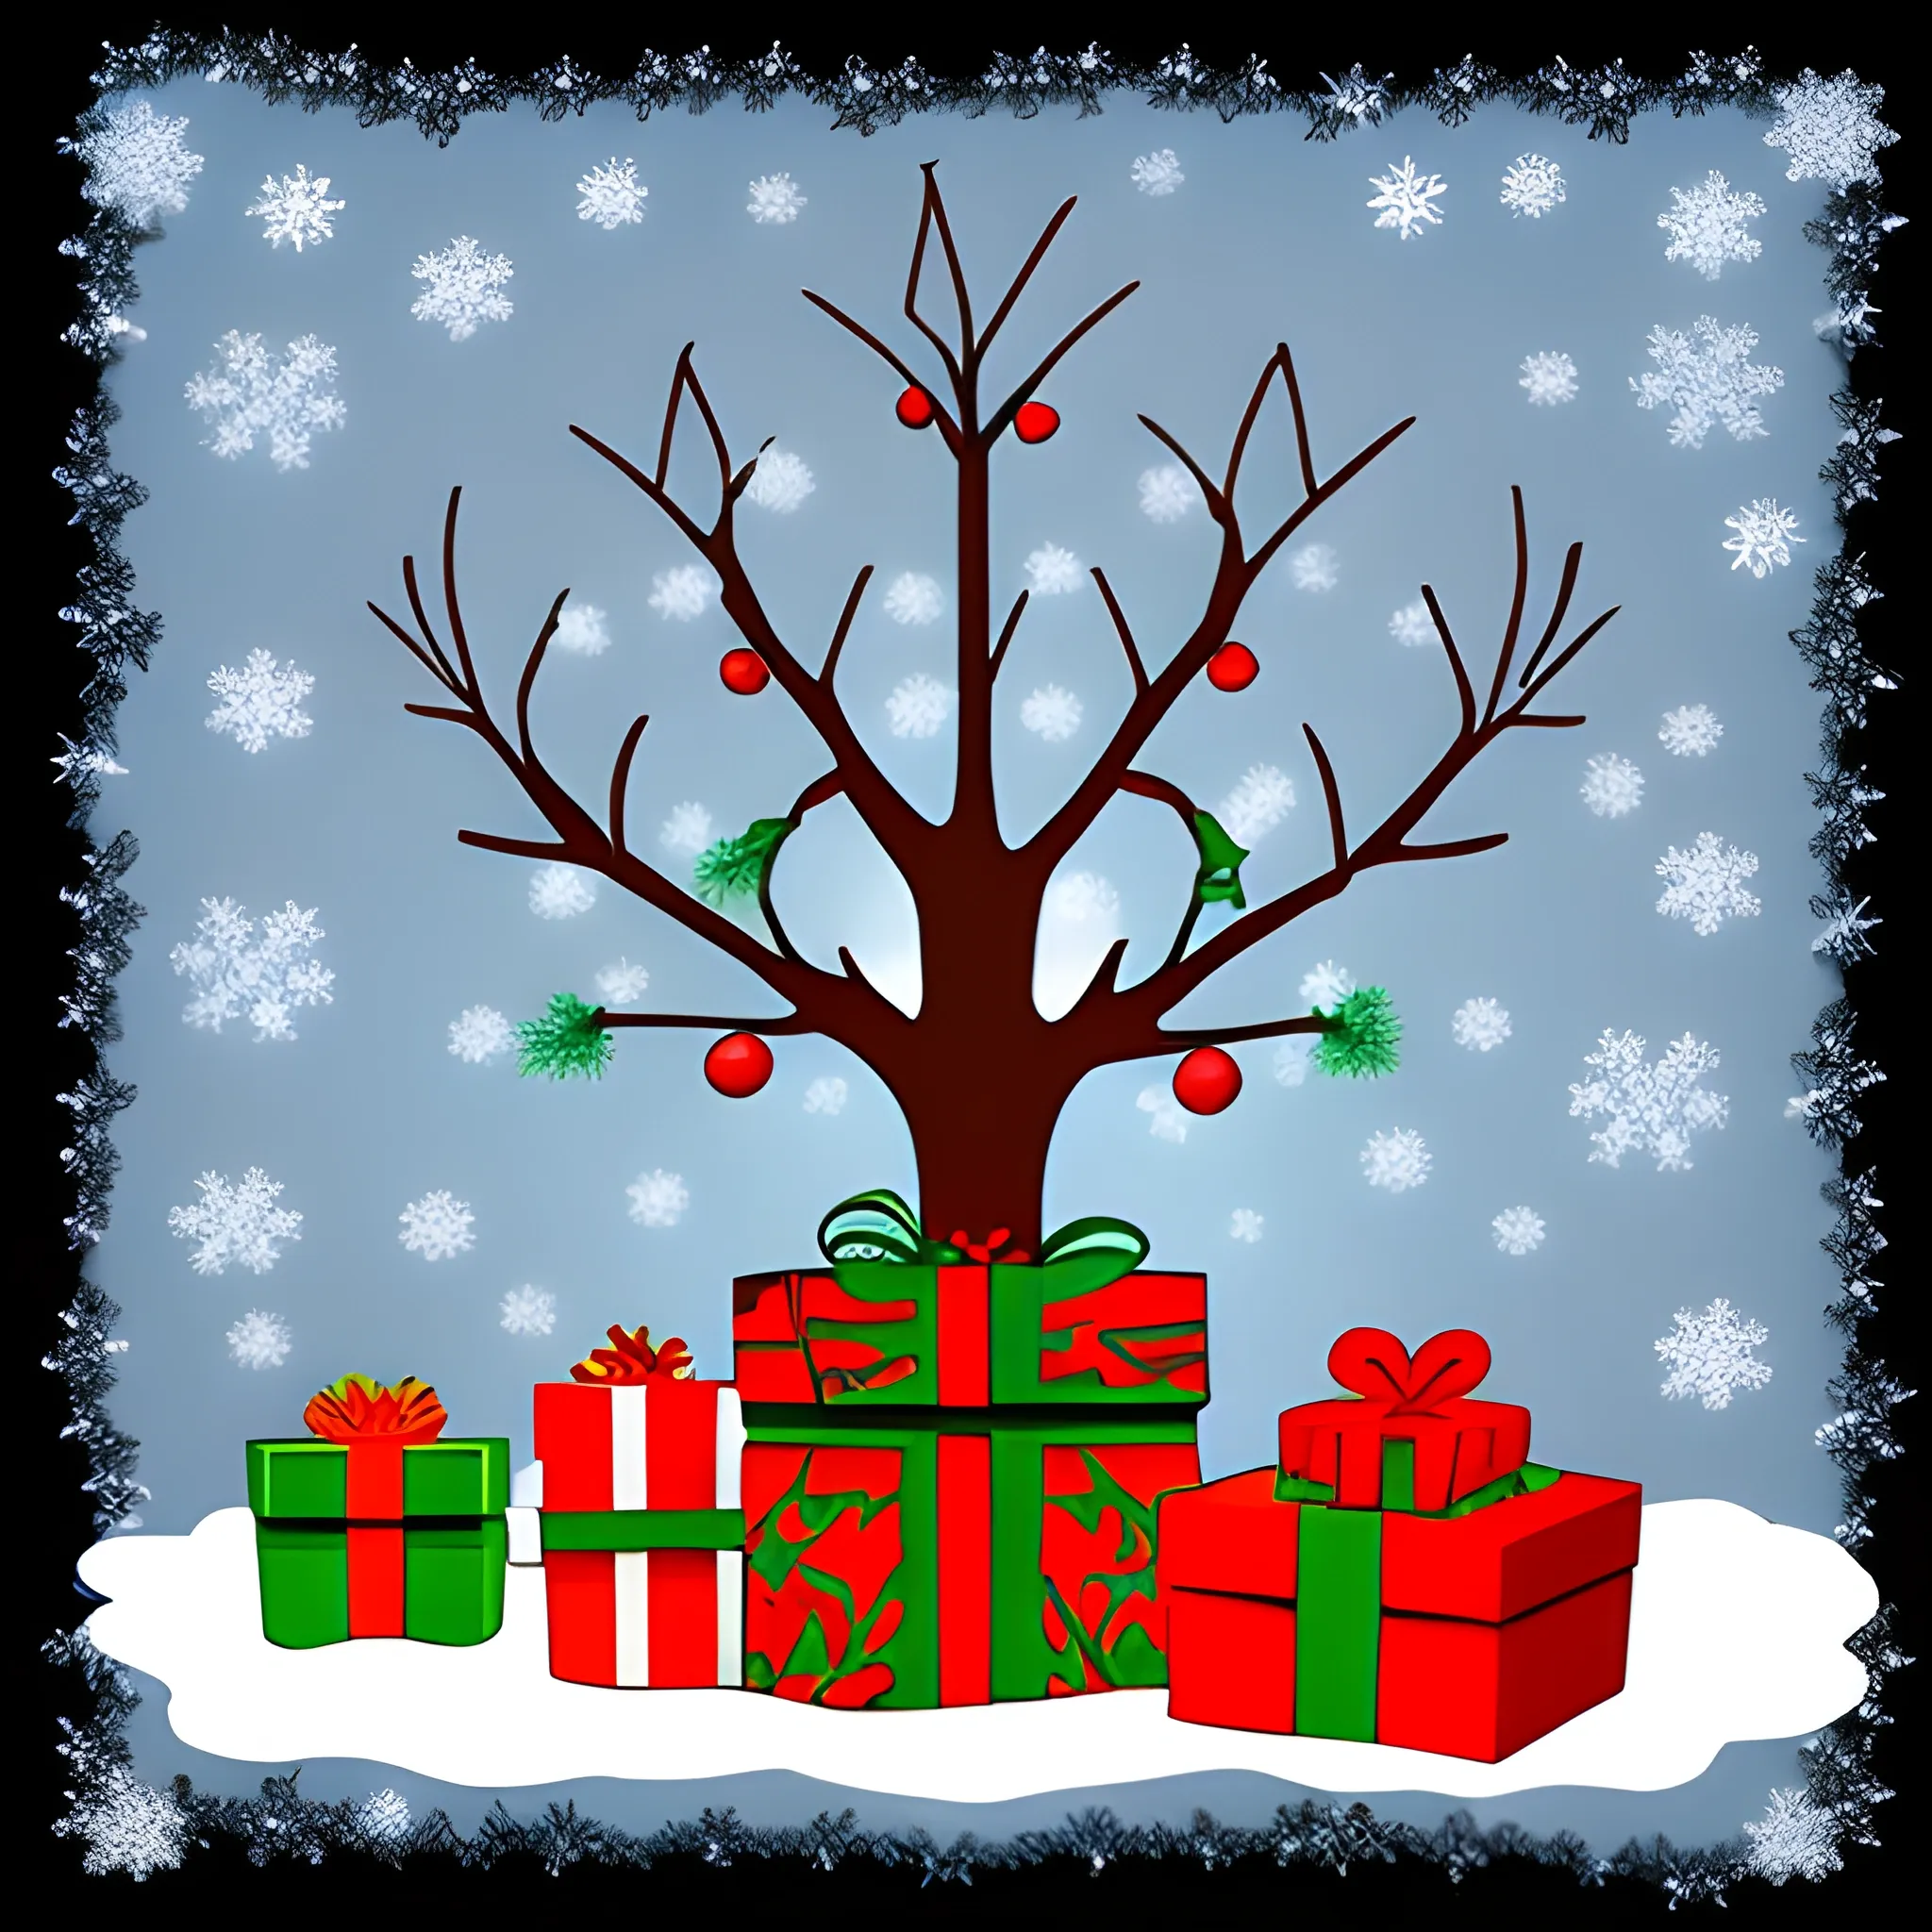 xmas, Cartoon, tree, gifts, santa